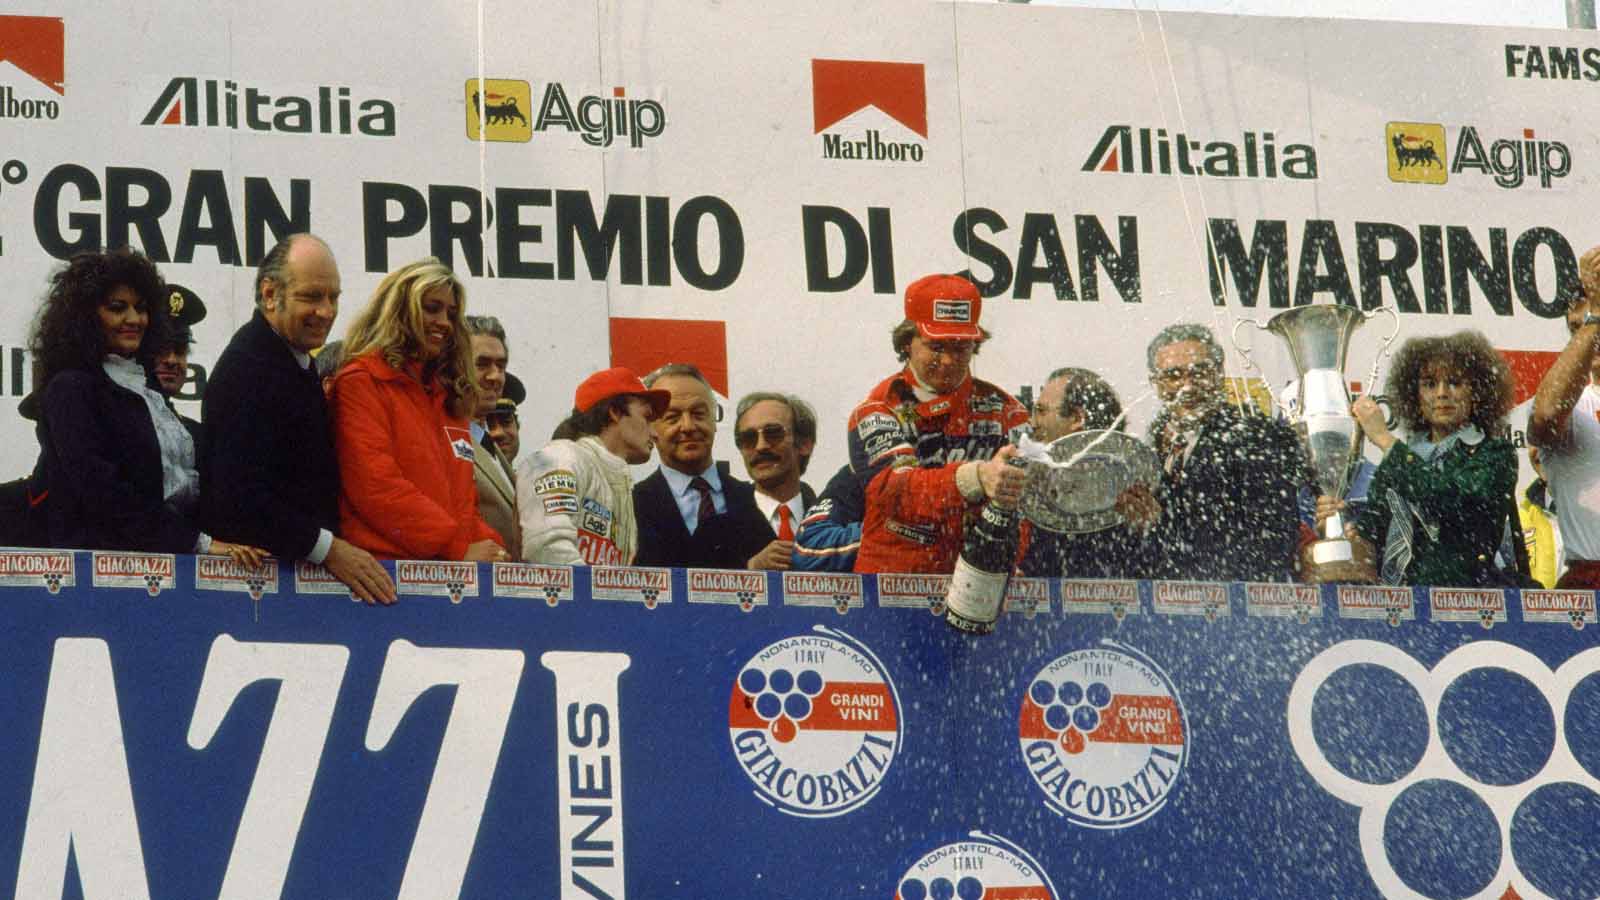 Didier Pironi og Gilles Villeneuve på pallen.  San Marino 1982.